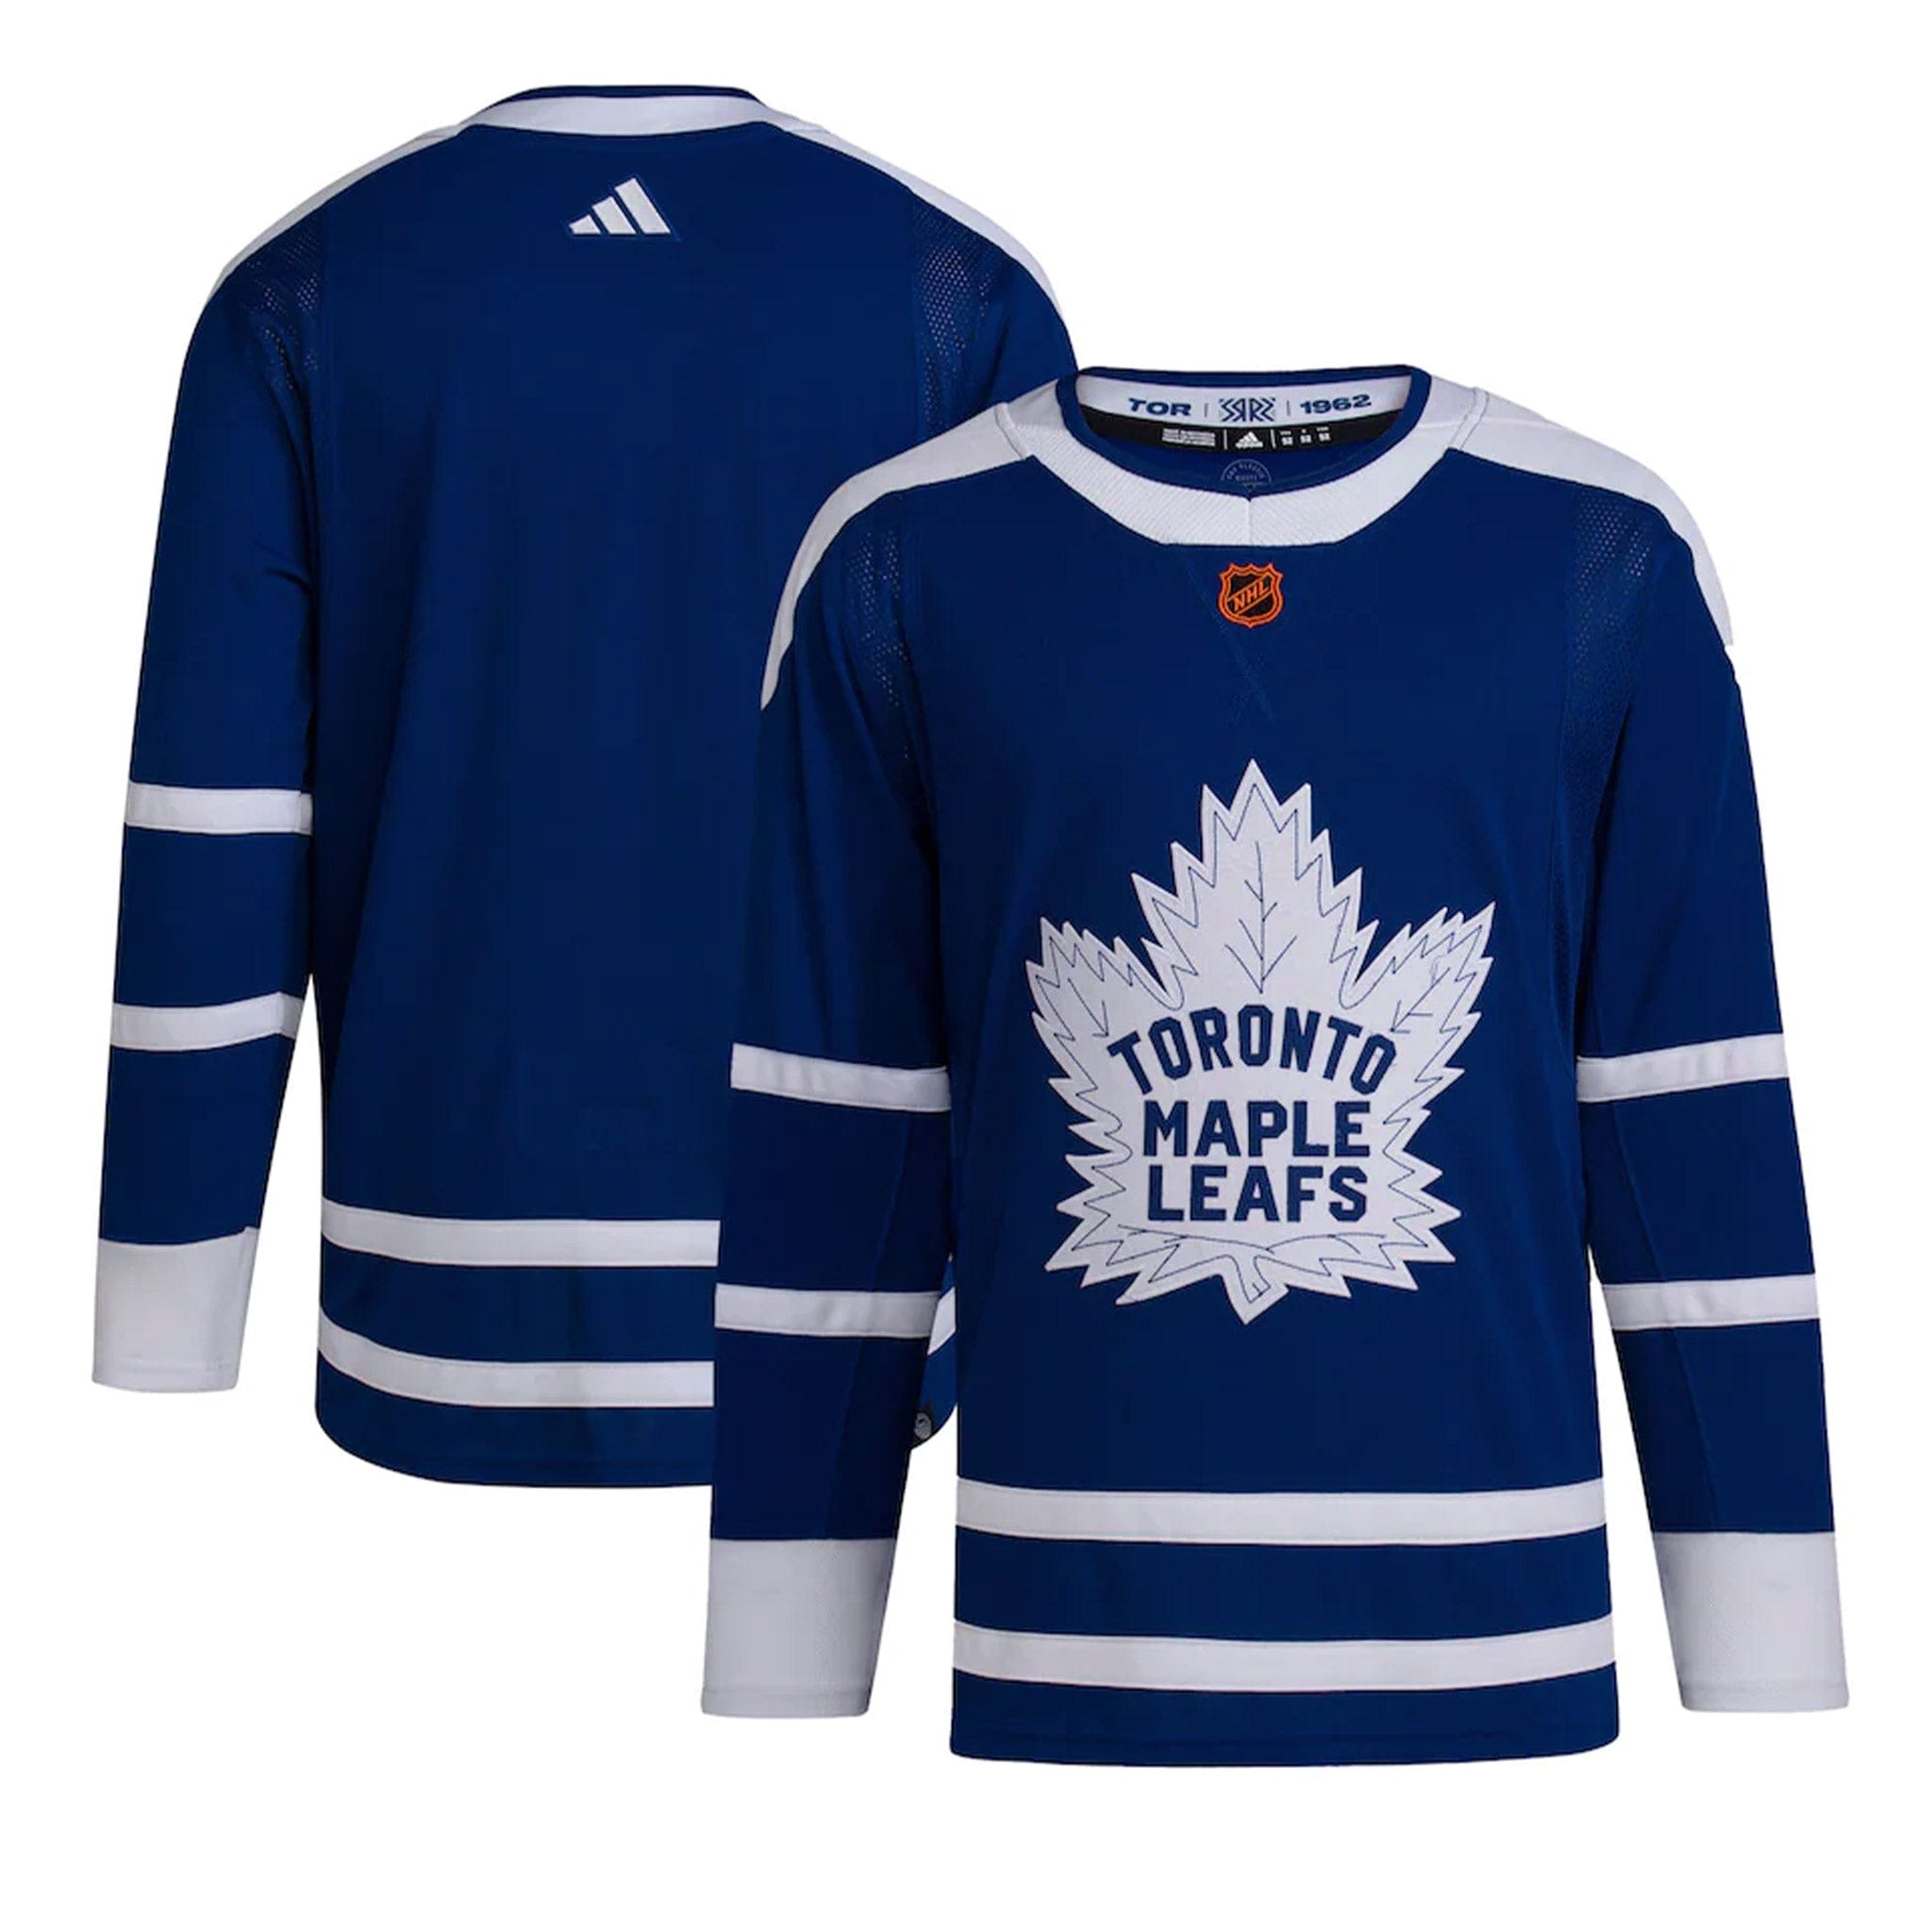 Toronto Maple Leafs Jerseys, Maple Leafs Hockey Jerseys, Authentic Maple Leafs  Jersey, Toronto Maple Leafs Primegreen Jerseys